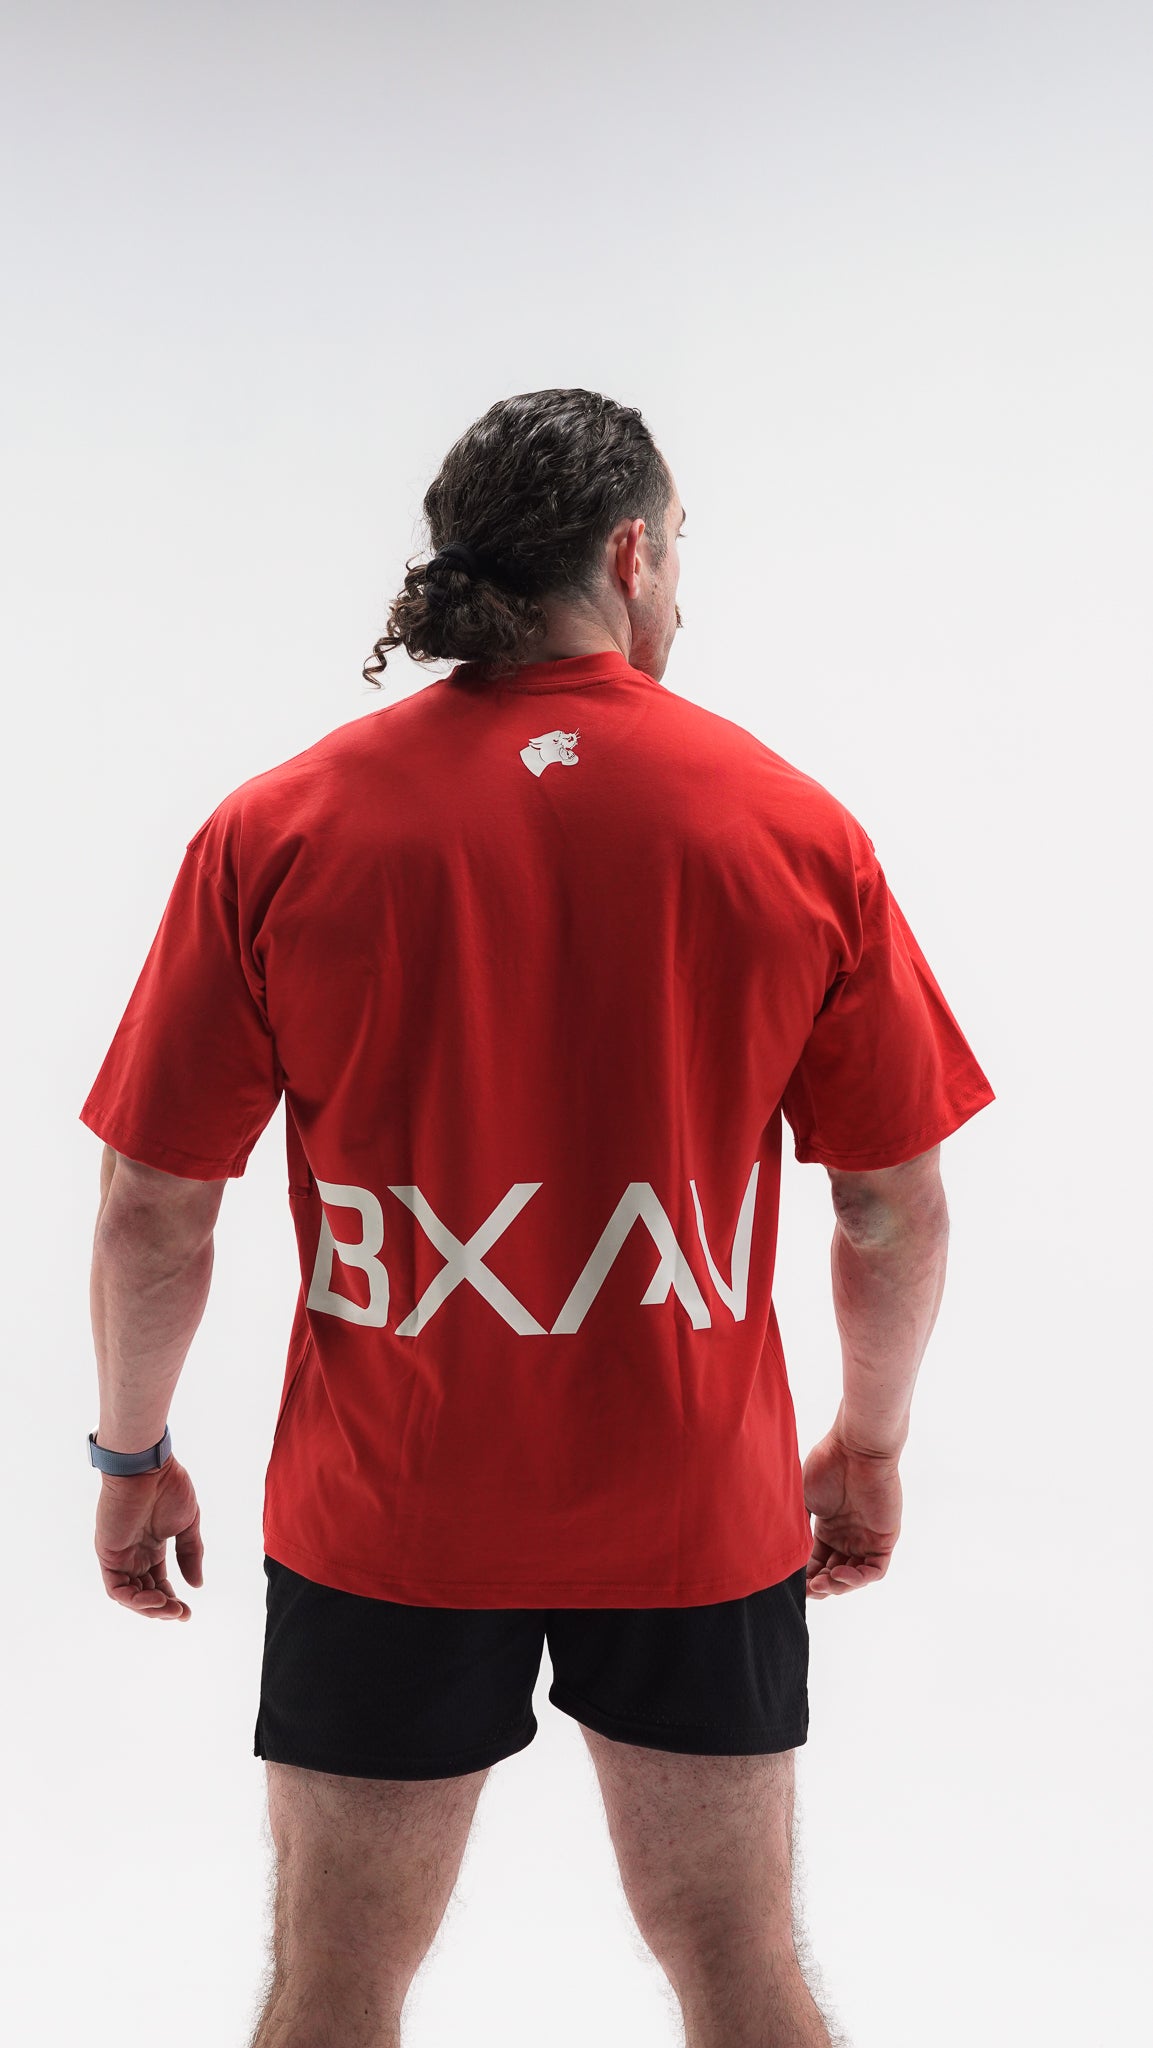 BXAV Logo Oversize Tee (Red)